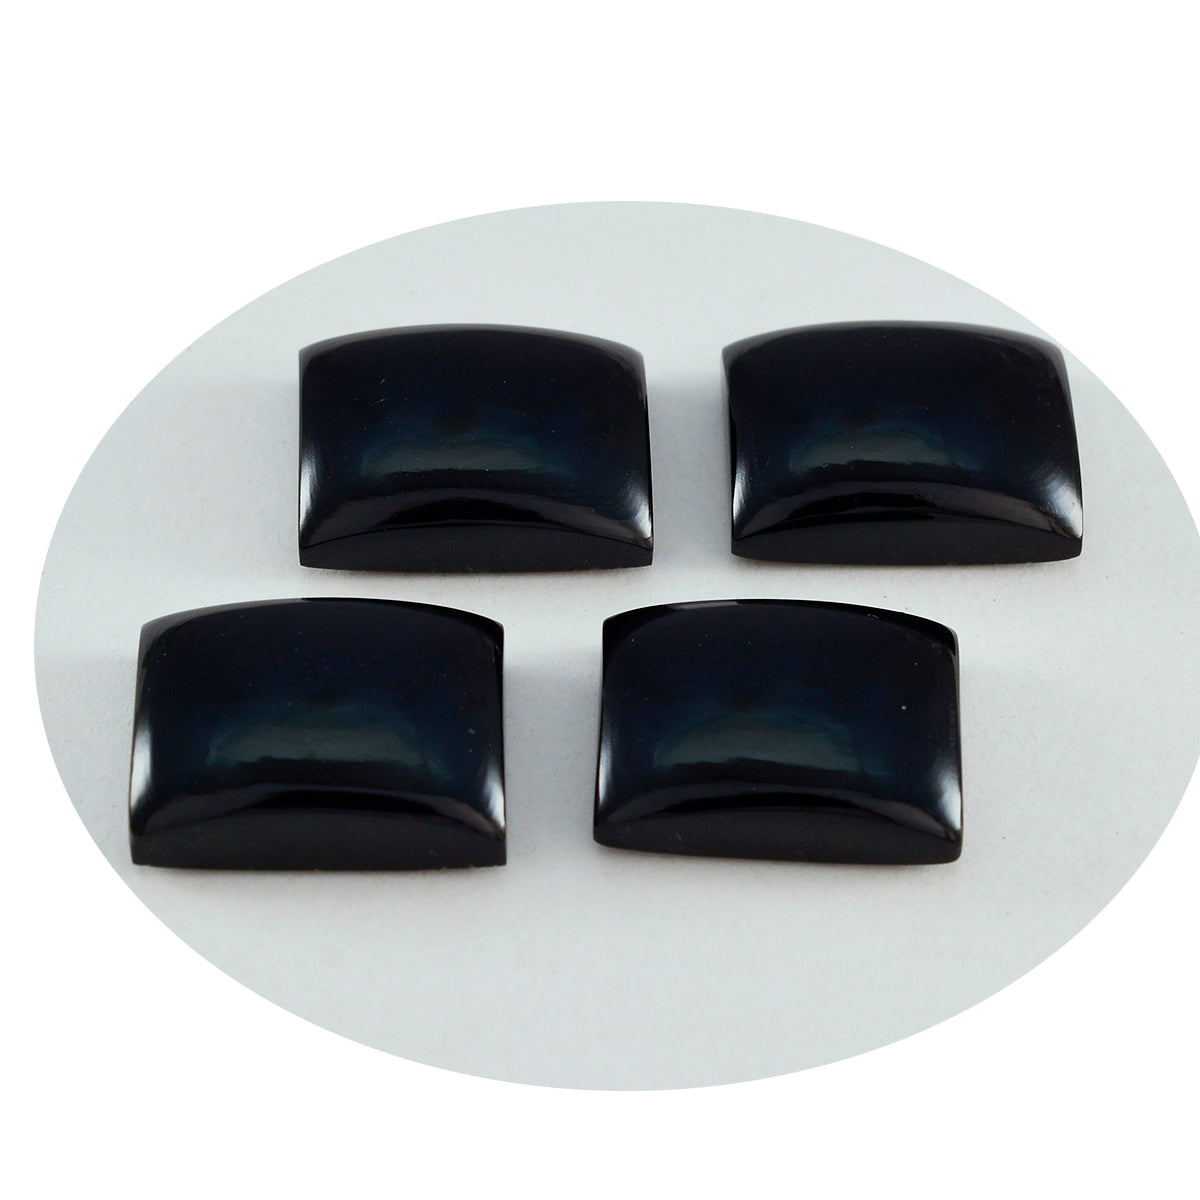 Riyogems 1 Stück schwarzer Onyx-Cabochon, 12 x 16 mm, achteckige Form, hochwertiger Edelstein